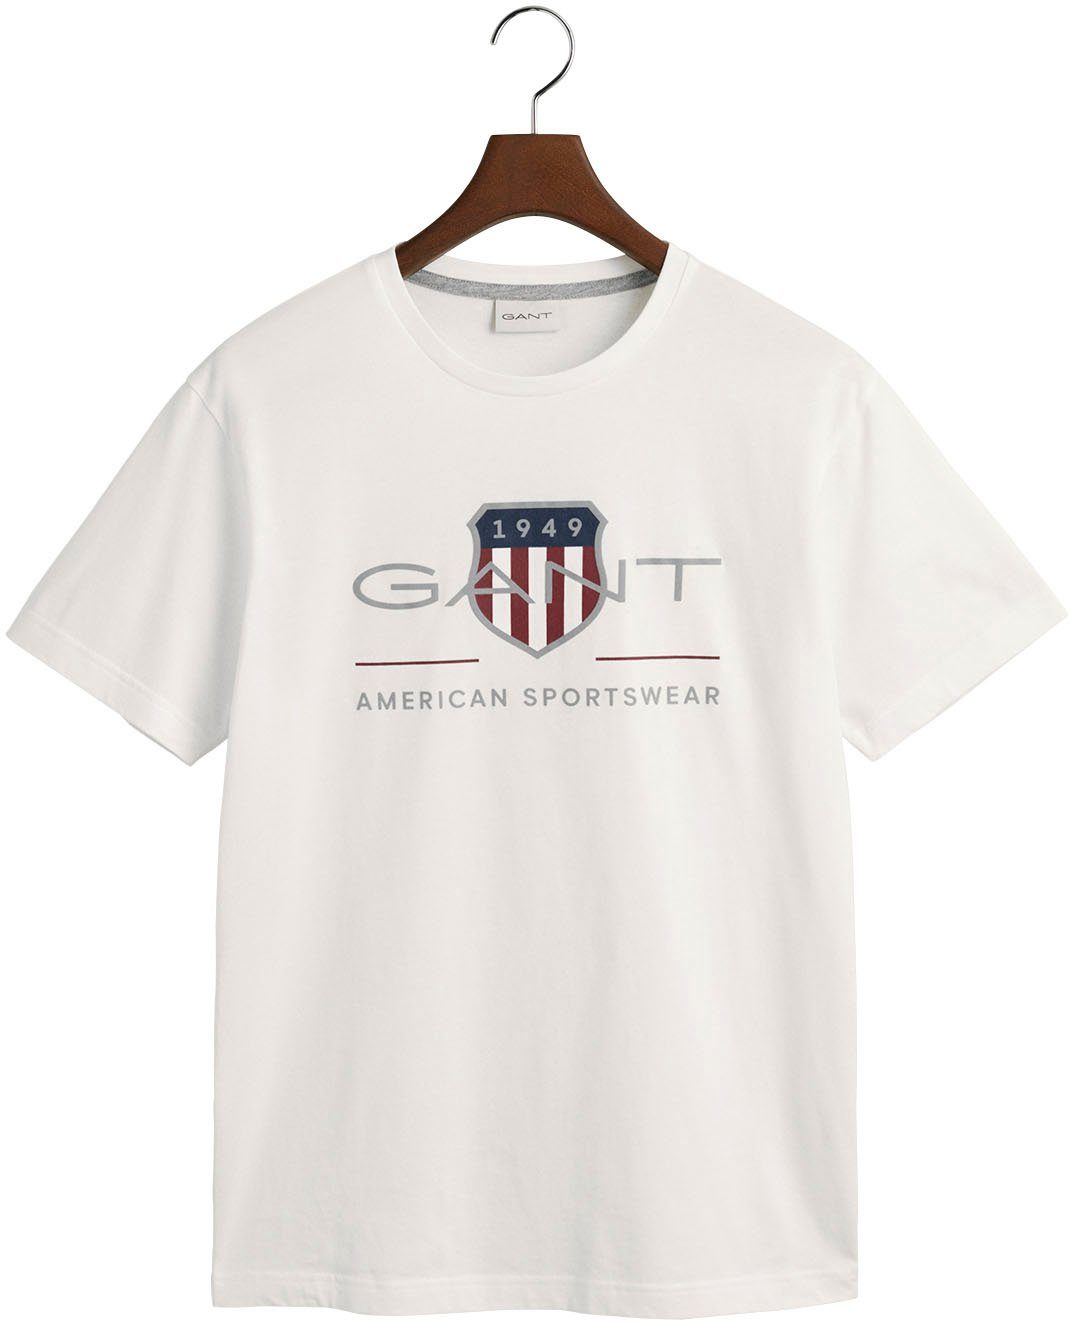 ARCHIVE der auf Logodruck SHIELD mit white SS Gant T-Shirt T-SHIRT Brust REG